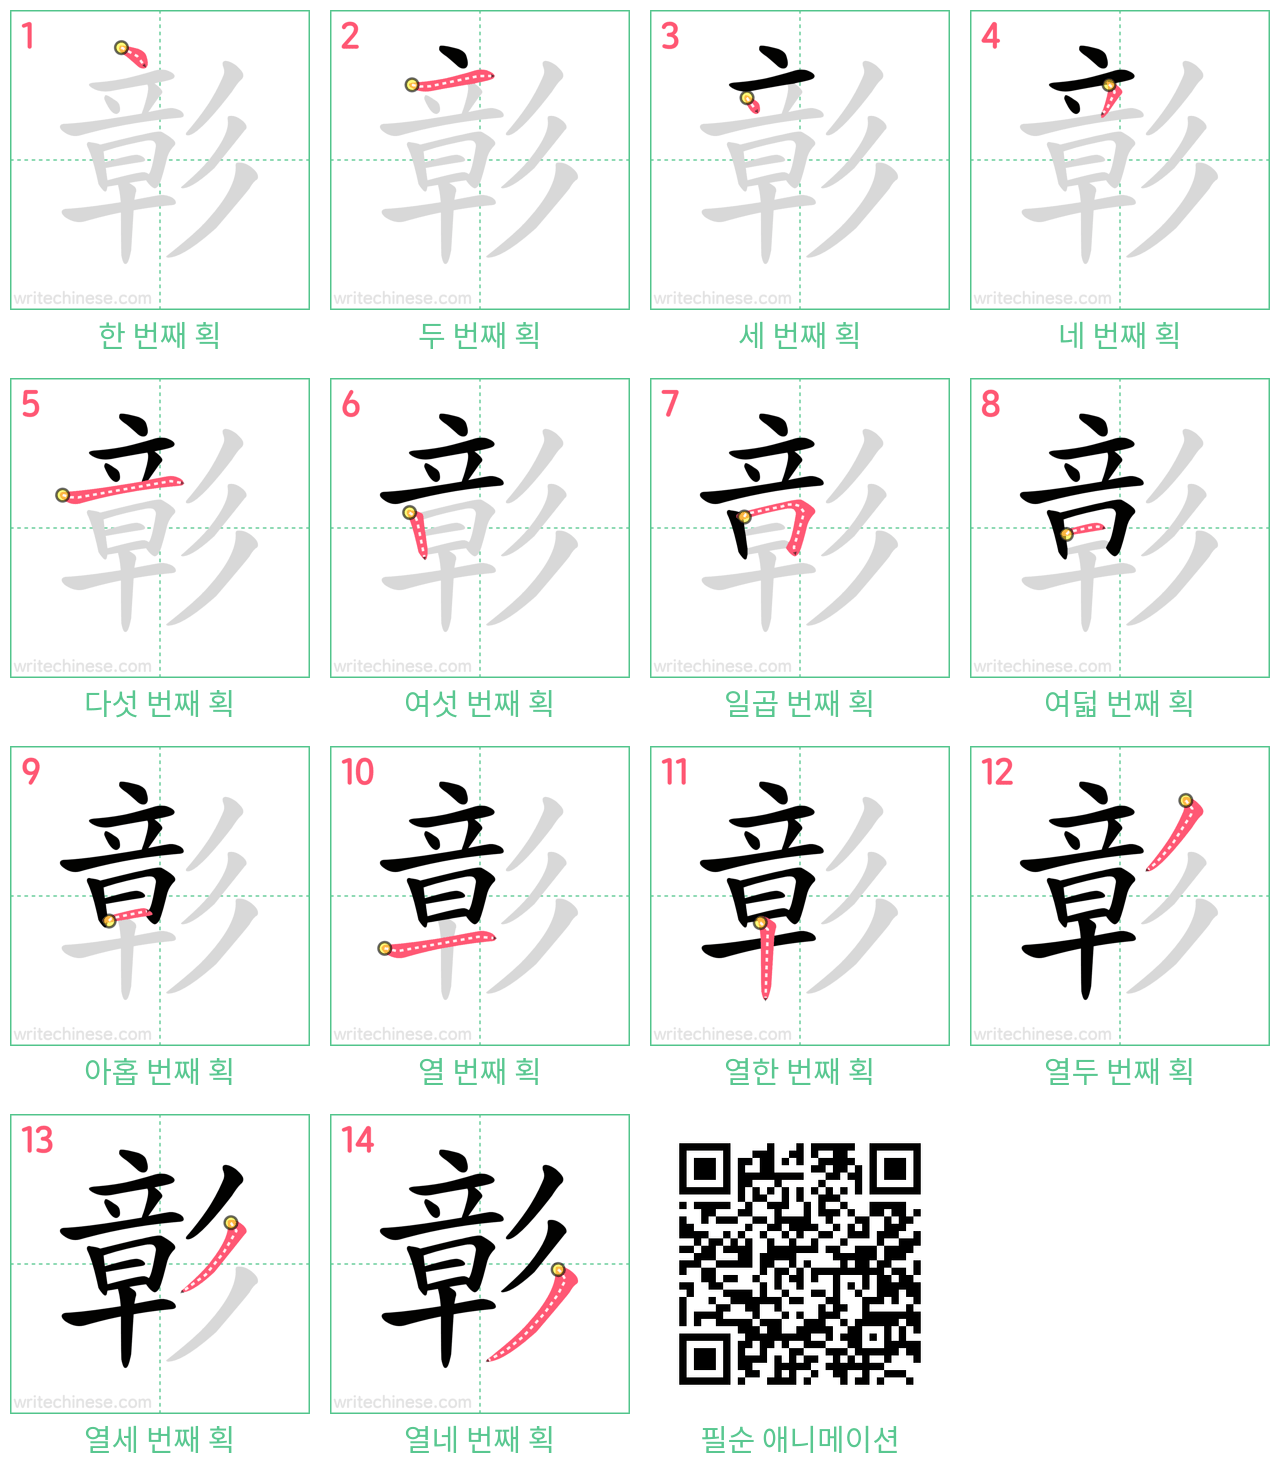 彰 step-by-step stroke order diagrams